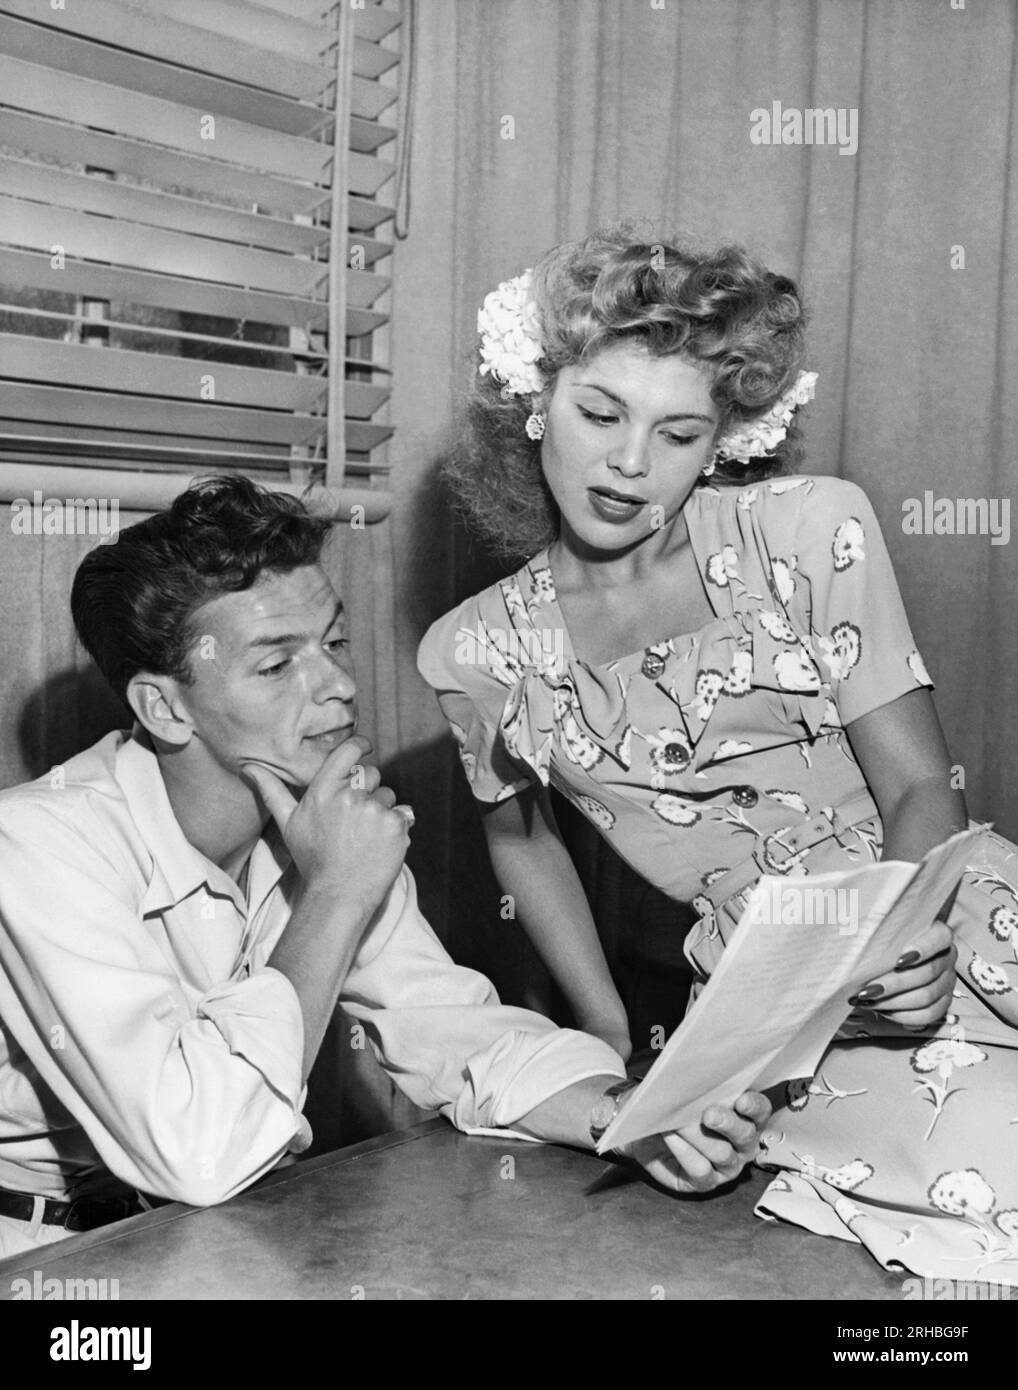 États-Unis : c. 1950 chanteurs Frank Sinatra et Eileen Barton qui lisent ensemble une partition musicale. Banque D'Images